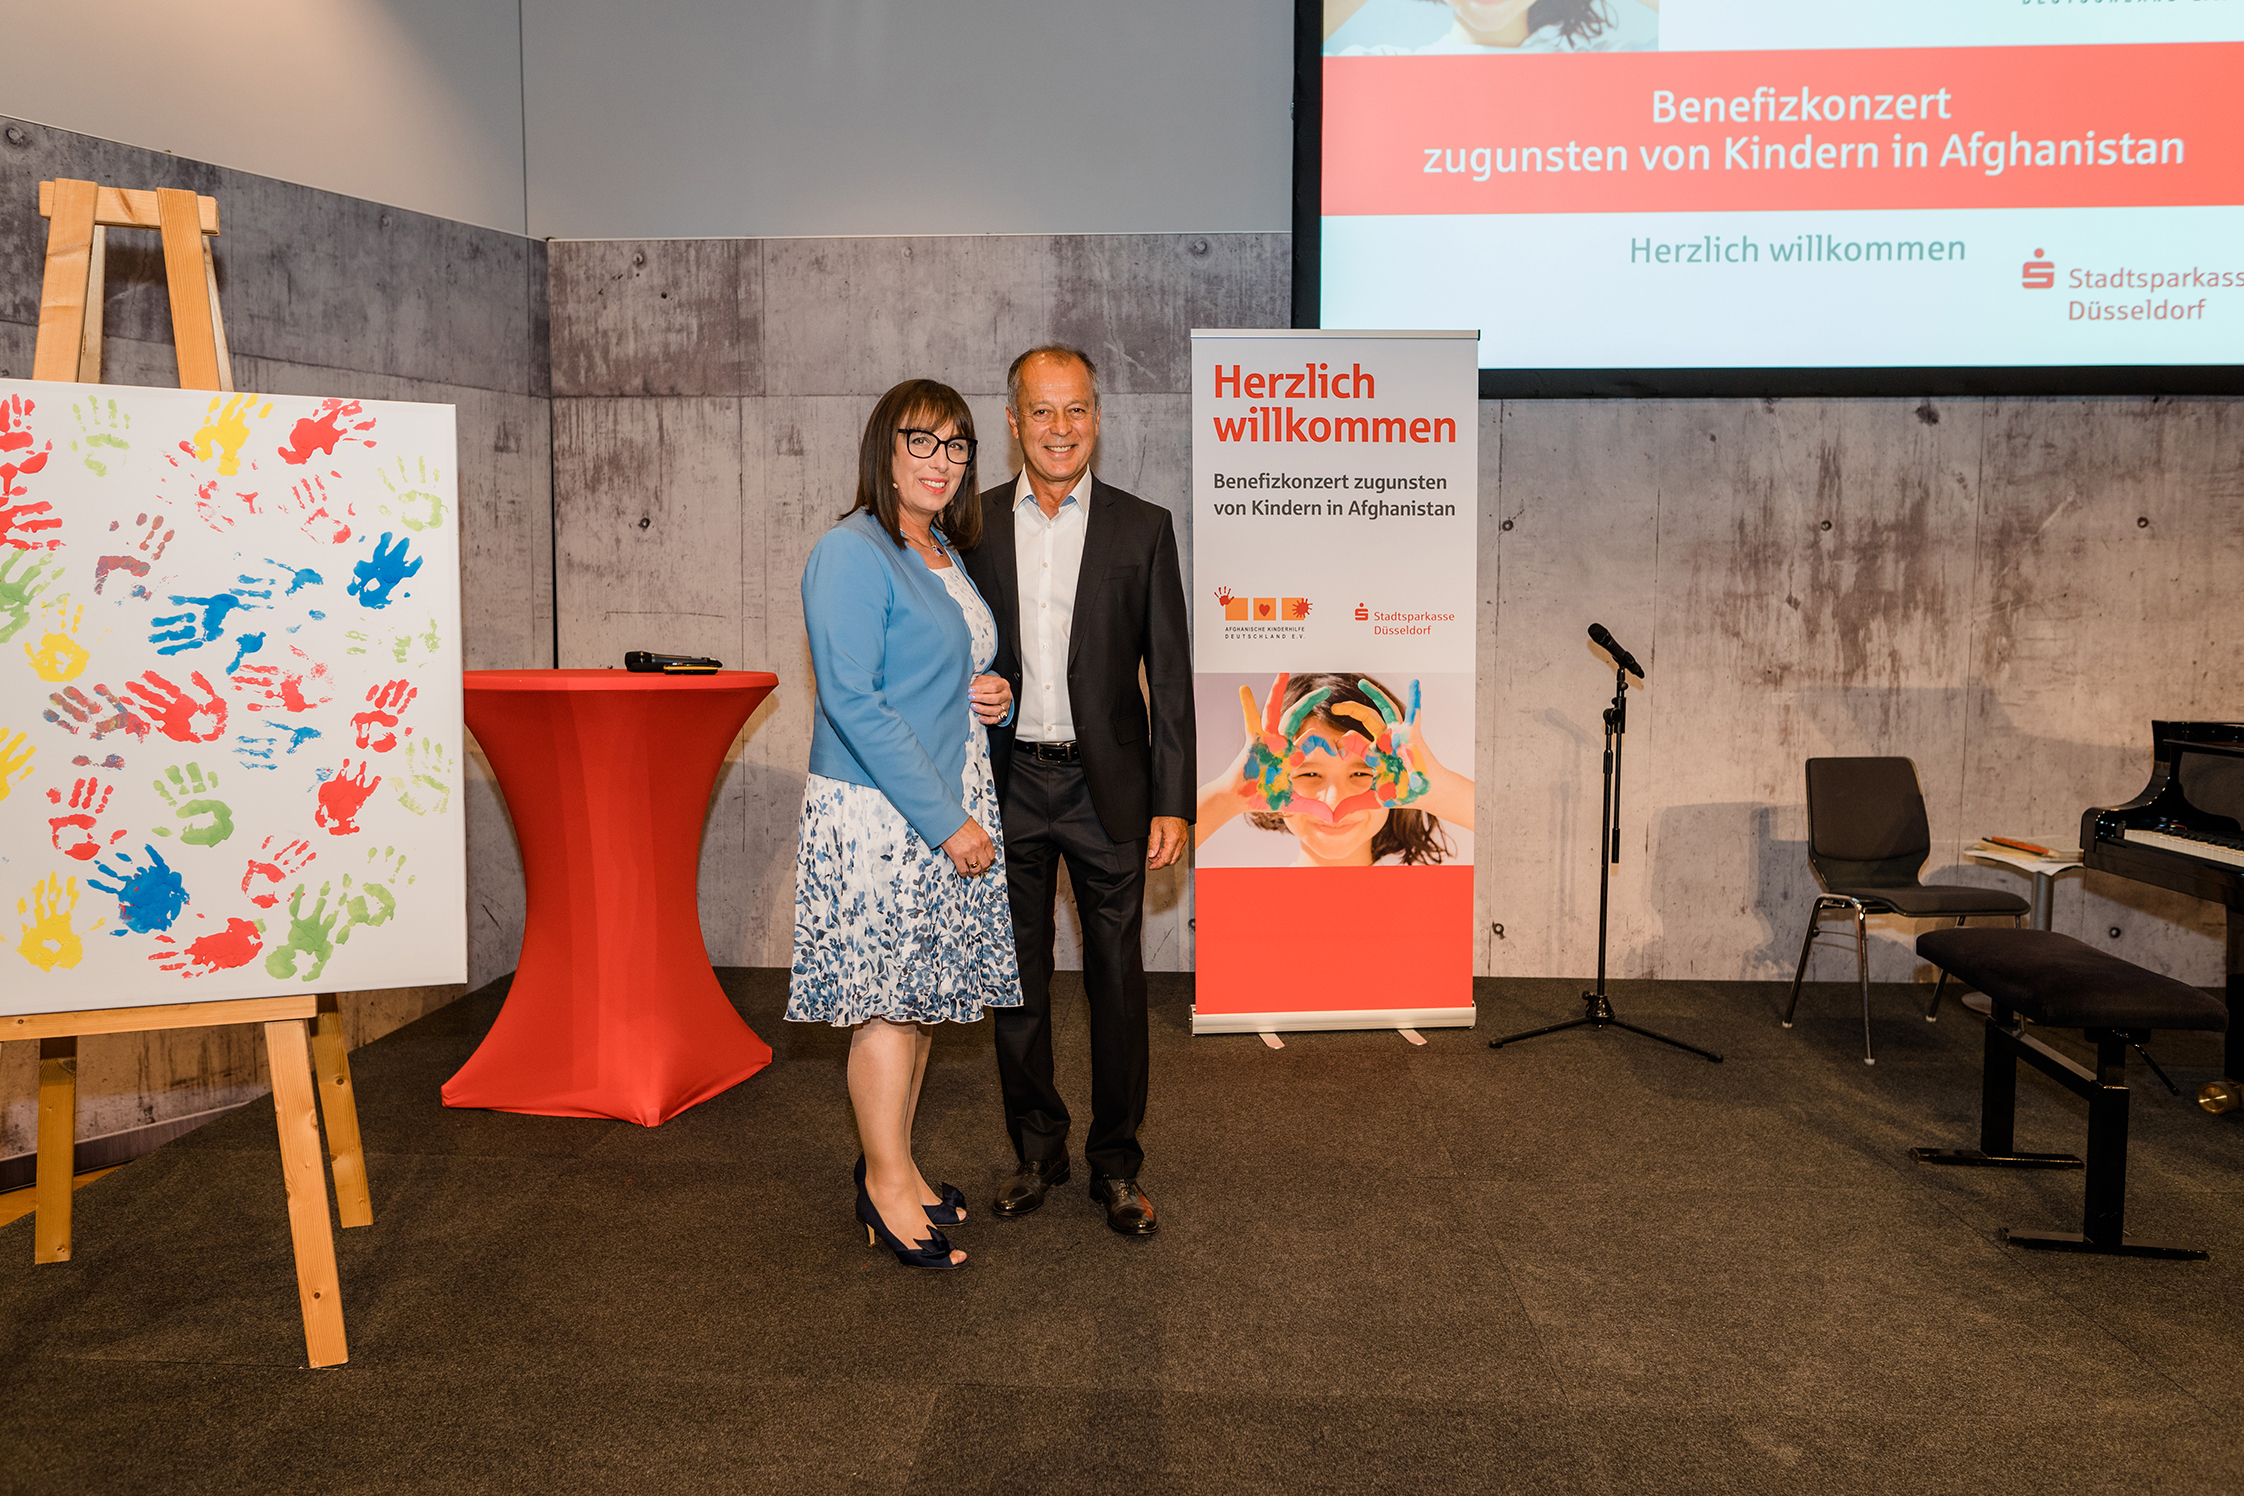 Sparkasse Düsseldorf: Benefizkonzert zum 20. Geburtstag